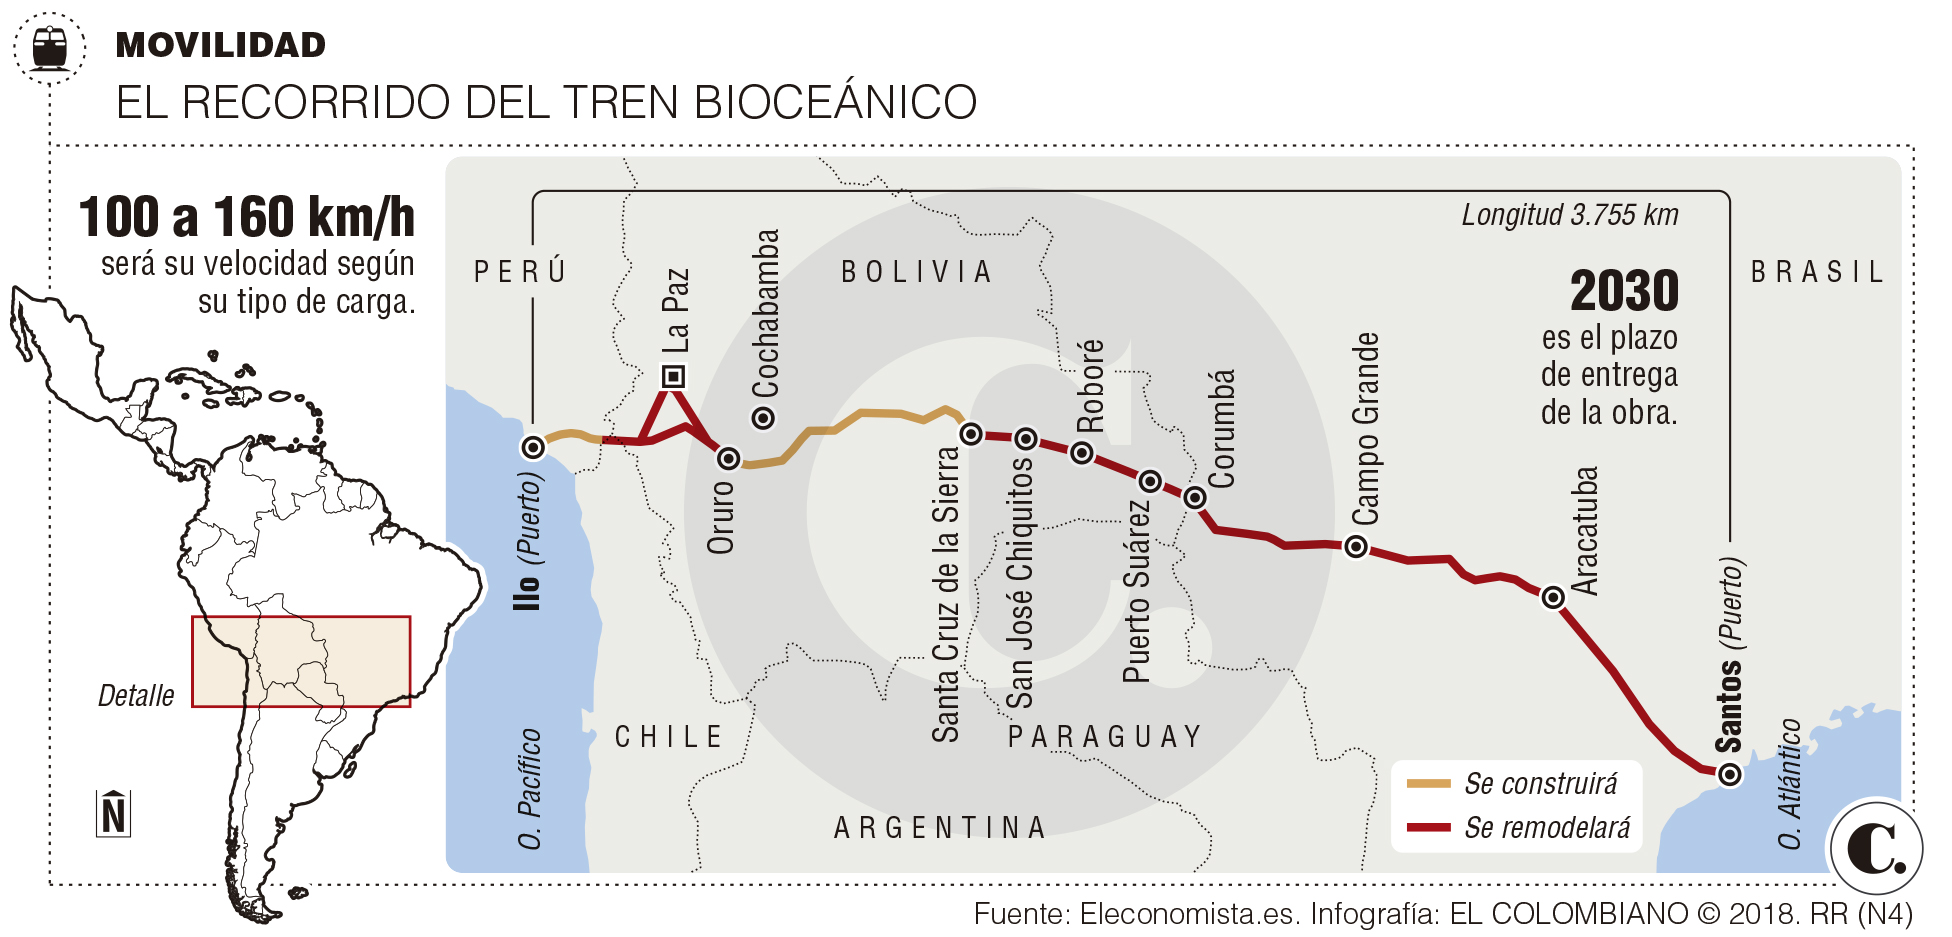 La vía férrea que promete integrar Suramérica